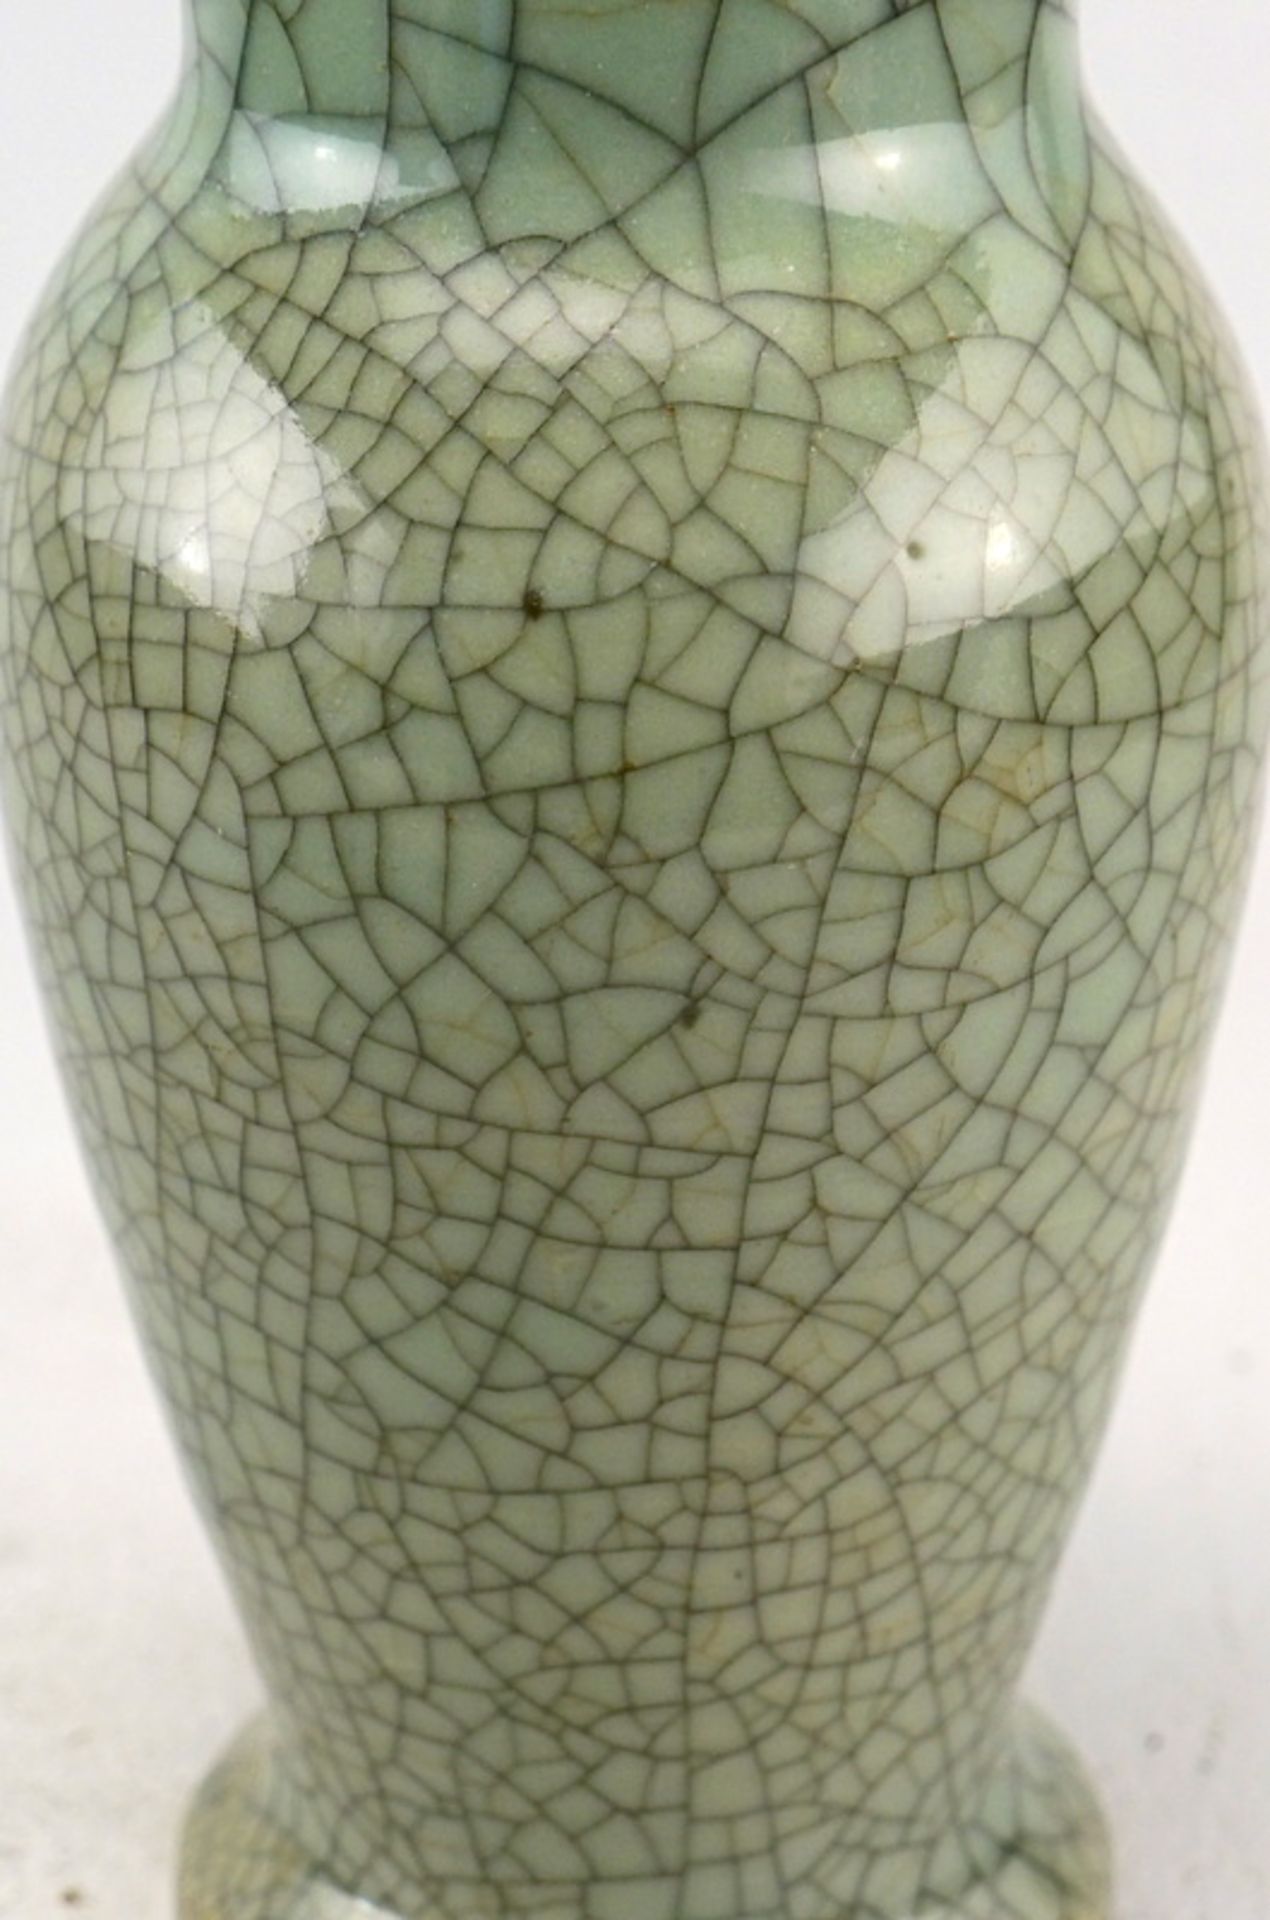 Vase mit dichten Krakelée, China, 19./20. Jhd. - Bild 2 aus 3